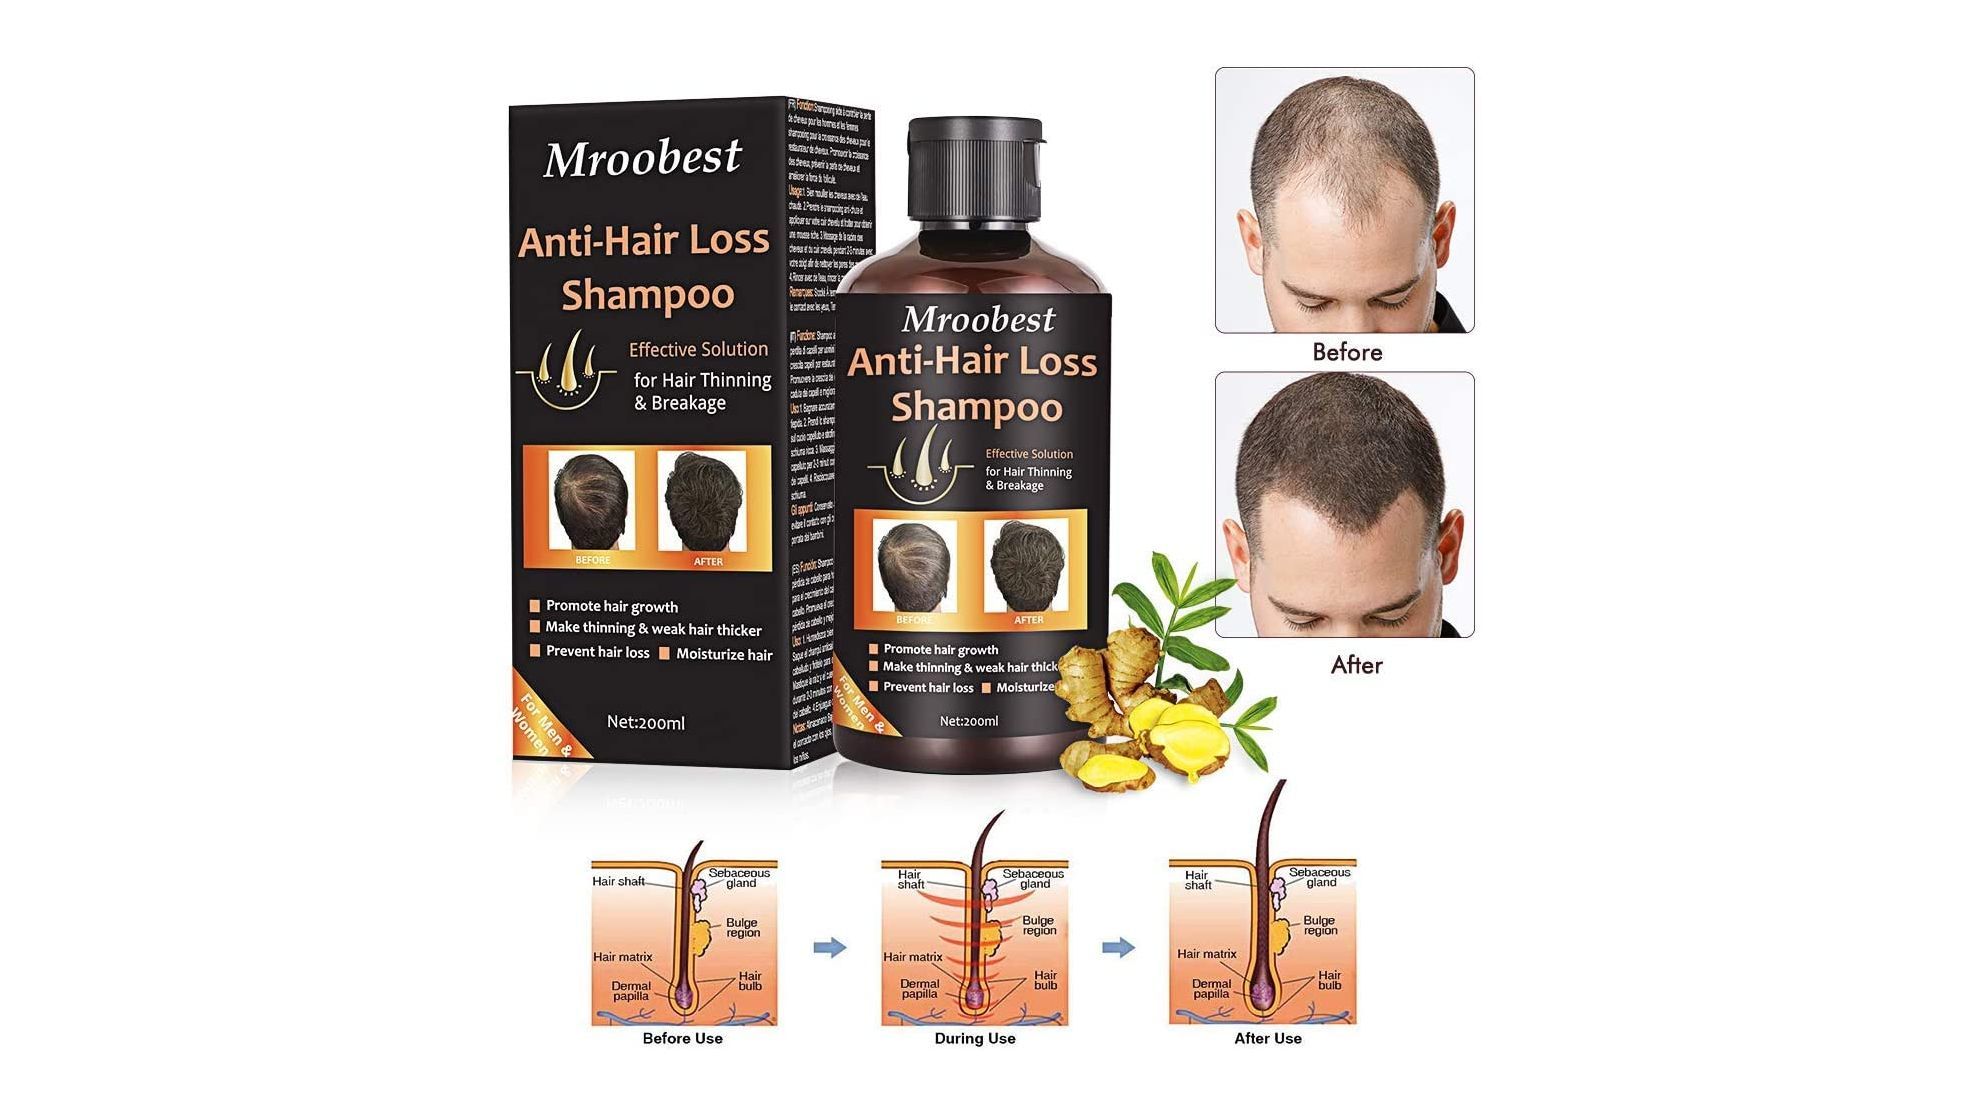 Cmo prevenir la alopecia y evitar la cada del pelo: champs, ampollas y otros productos para el cuidado capilar masculino